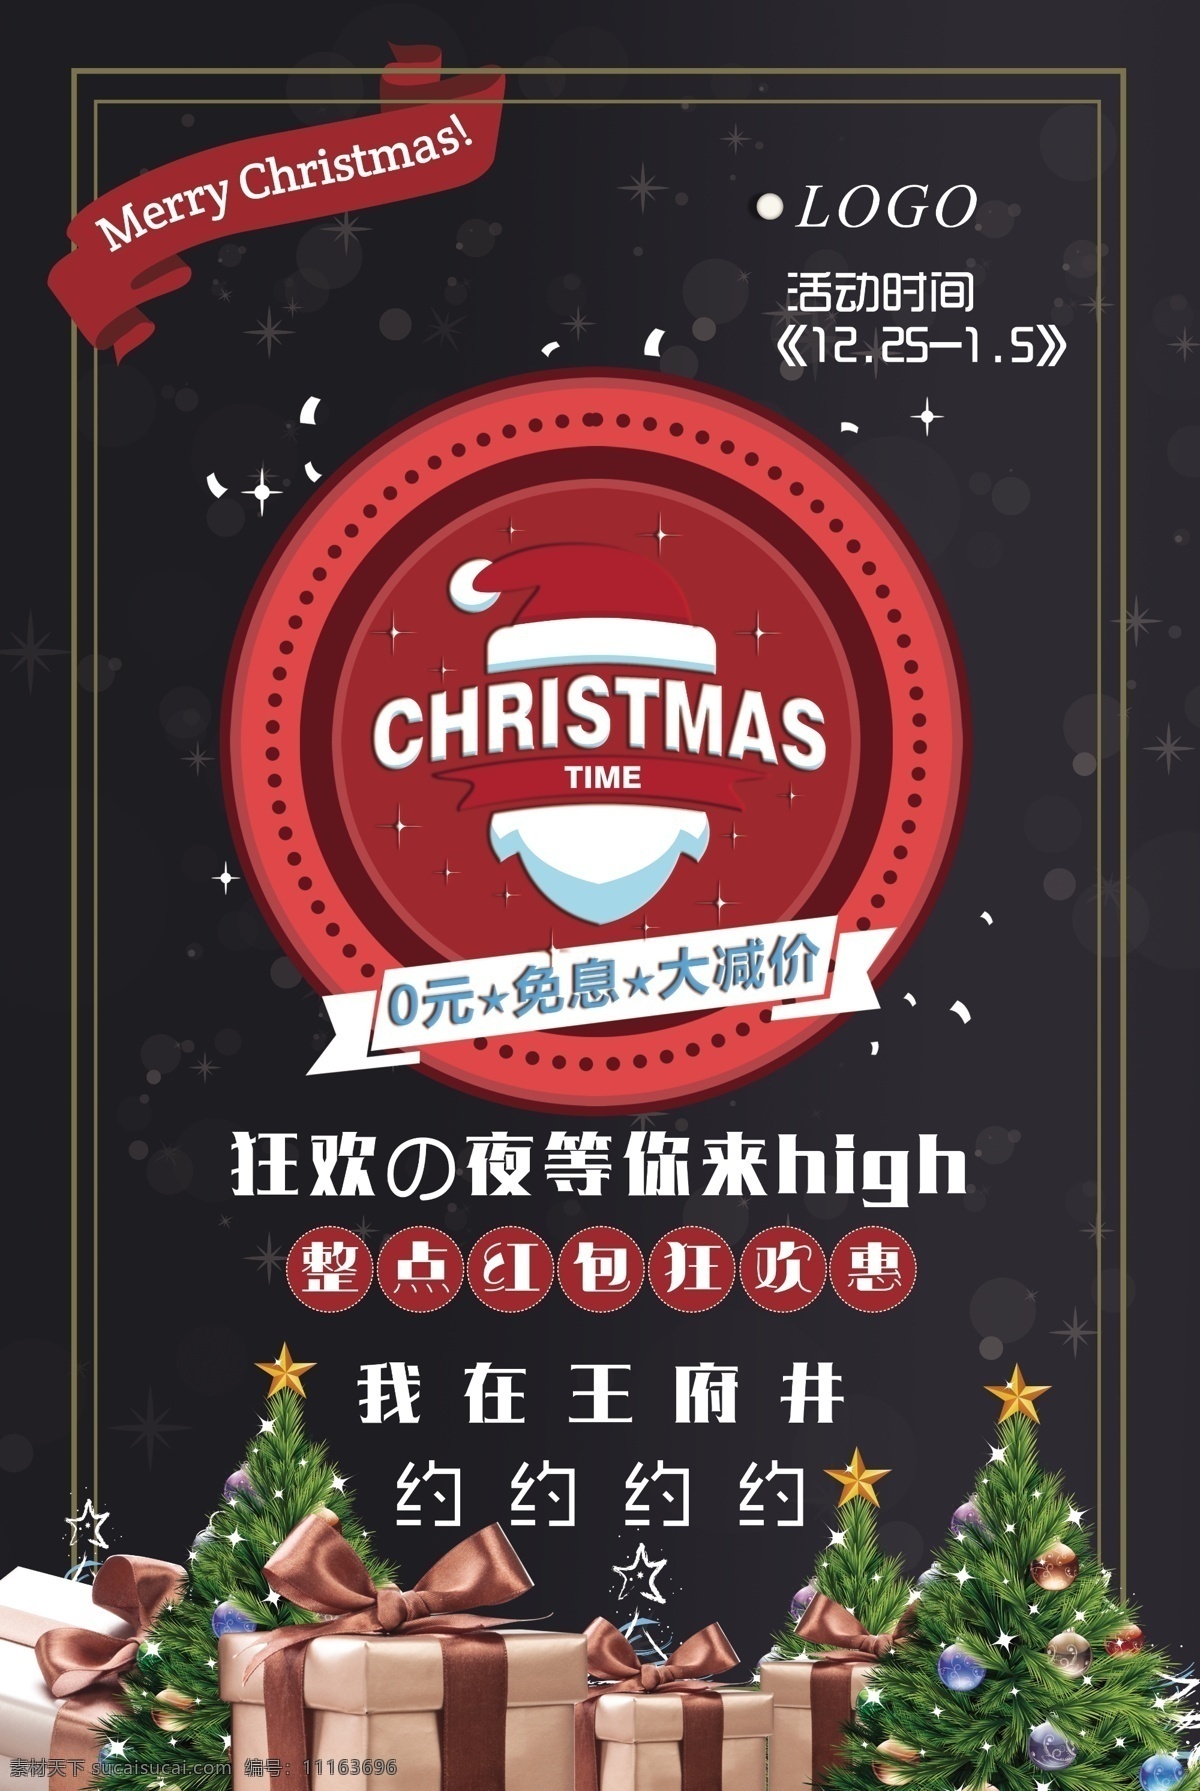 圣诞节 主题 圣诞广告 圣诞节活动 海报 模板 圣诞促销海报 宣传海报 圣诞节展板